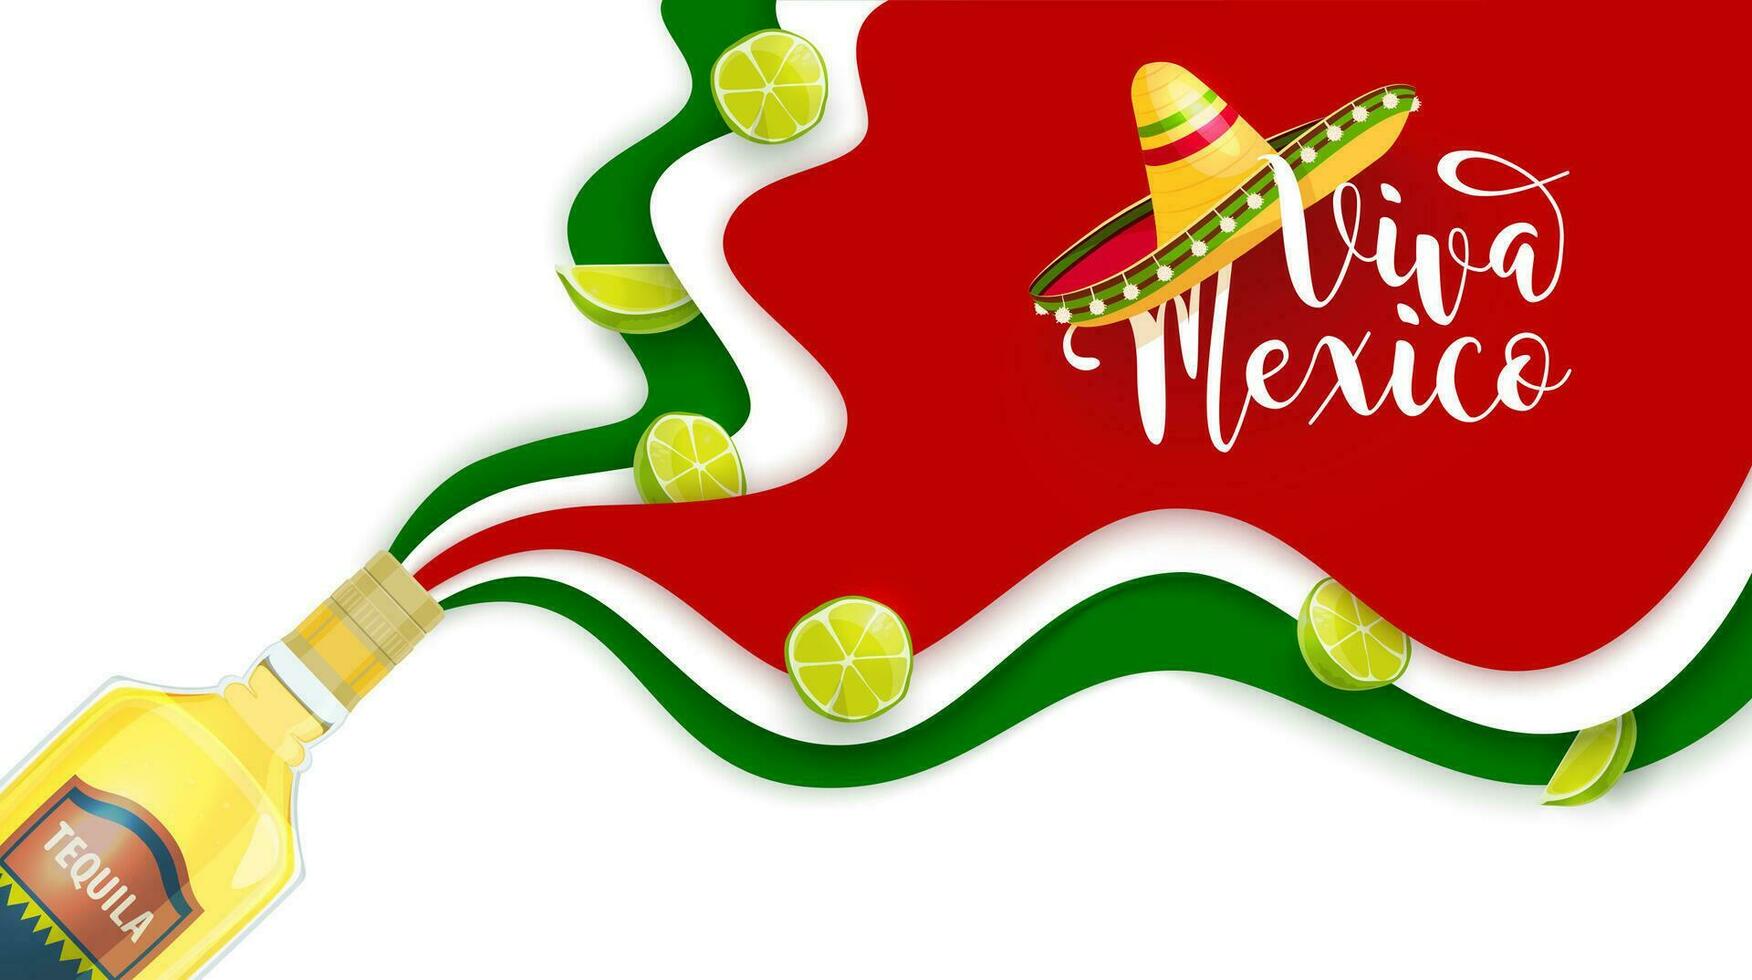 viva Mexico papier besnoeiing banier met Mexicaans sombrero vector